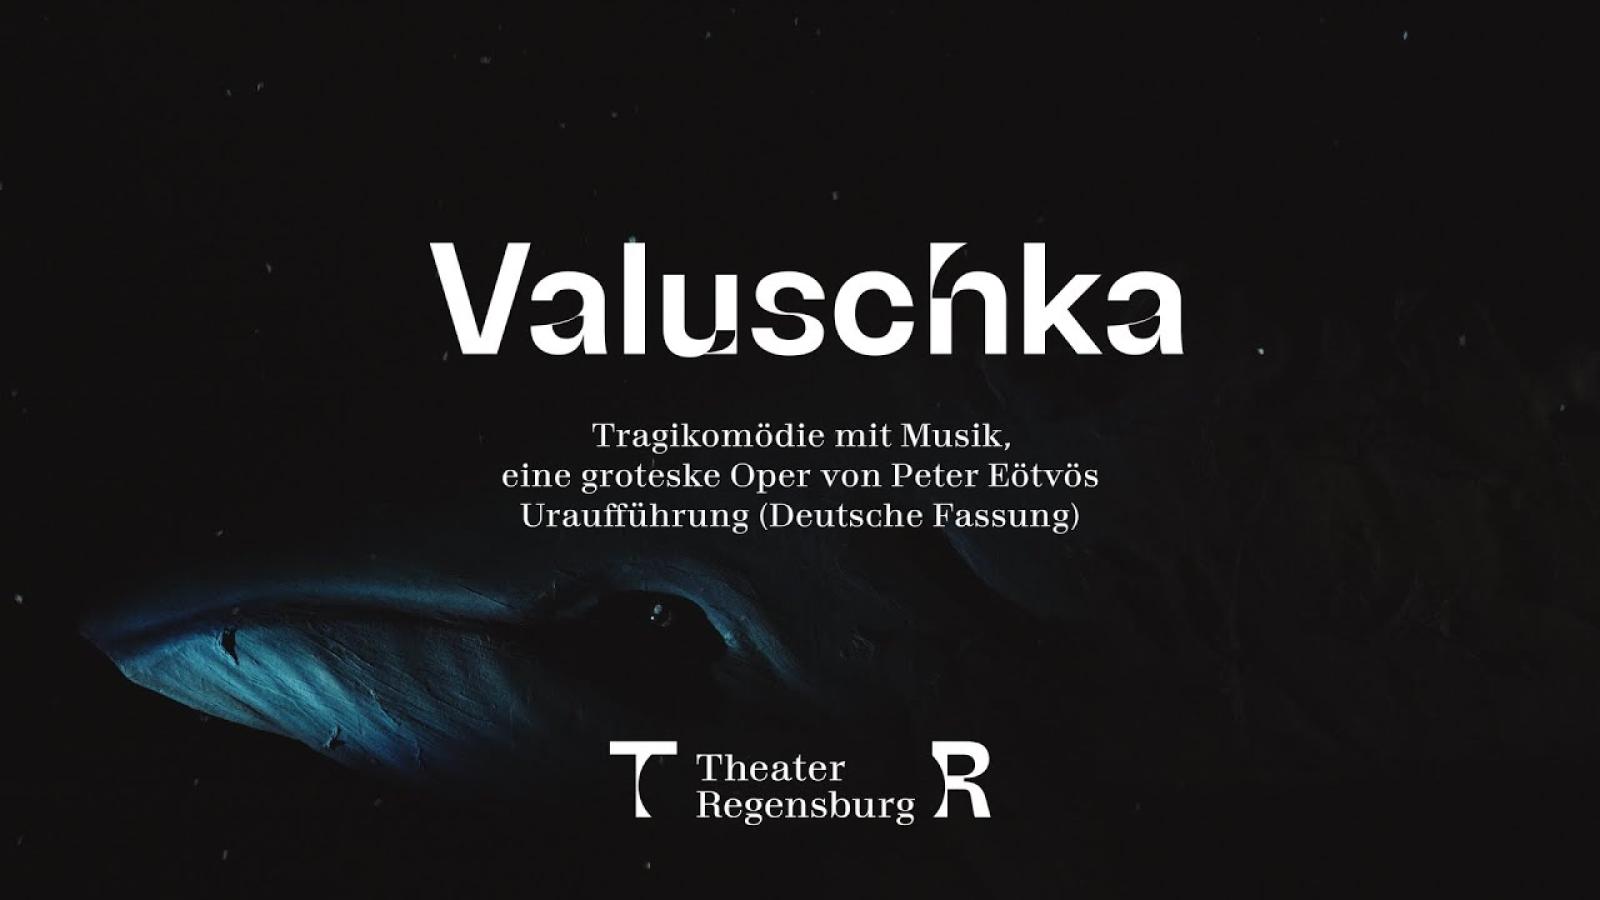 Valuschka